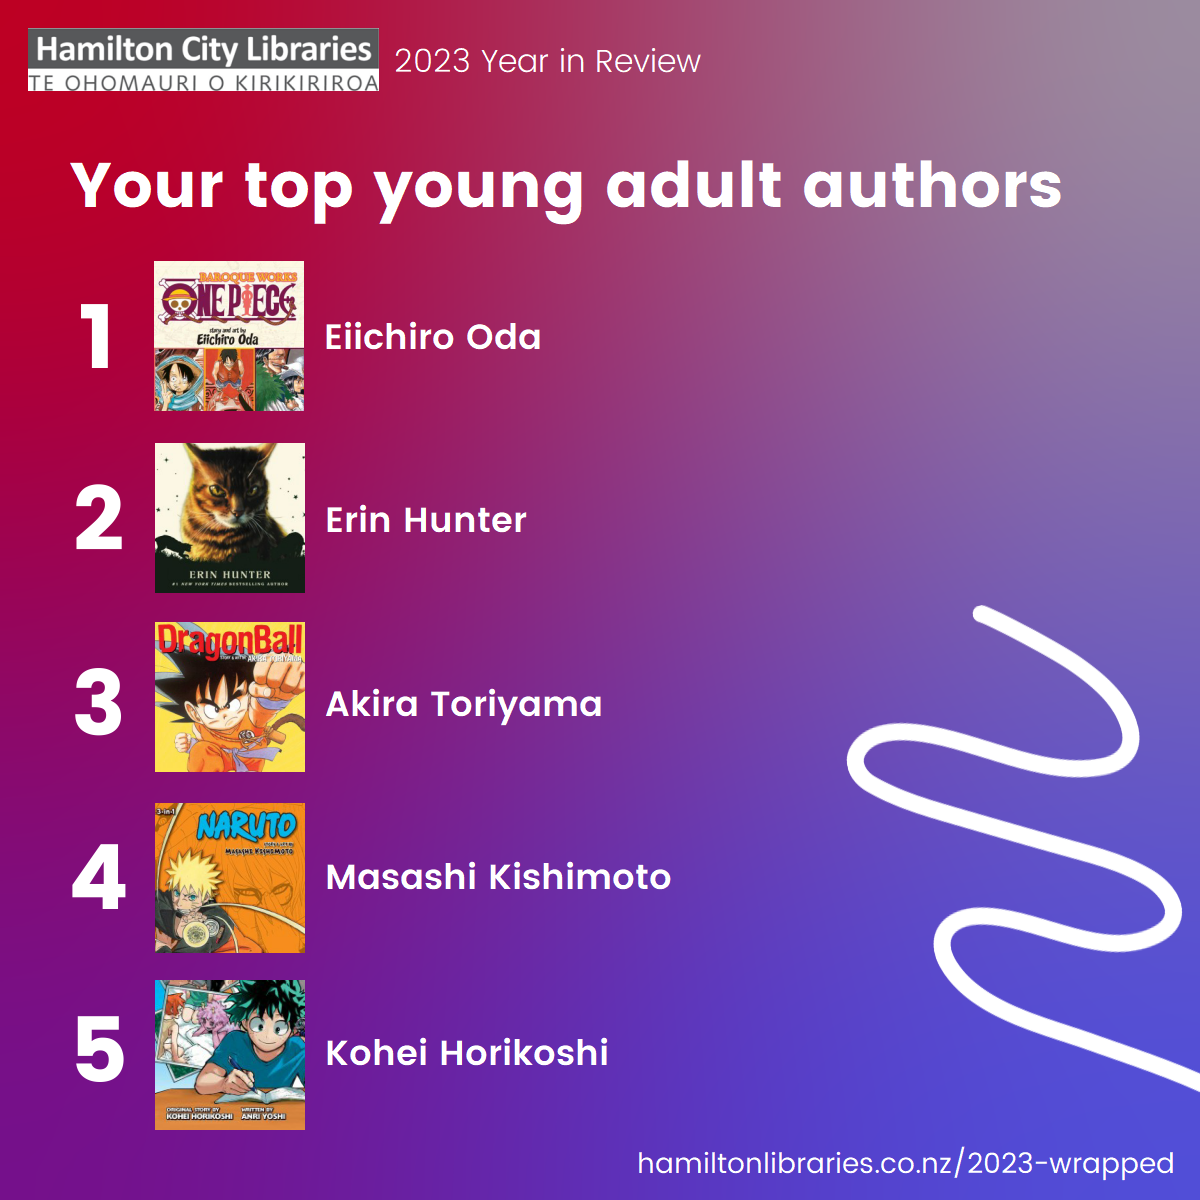 Top 5 YA Authors: Eiichiro Oda, Erin Hunter, Akira Toriyama, Masashi Kishimoto, Kohei Horikoshi